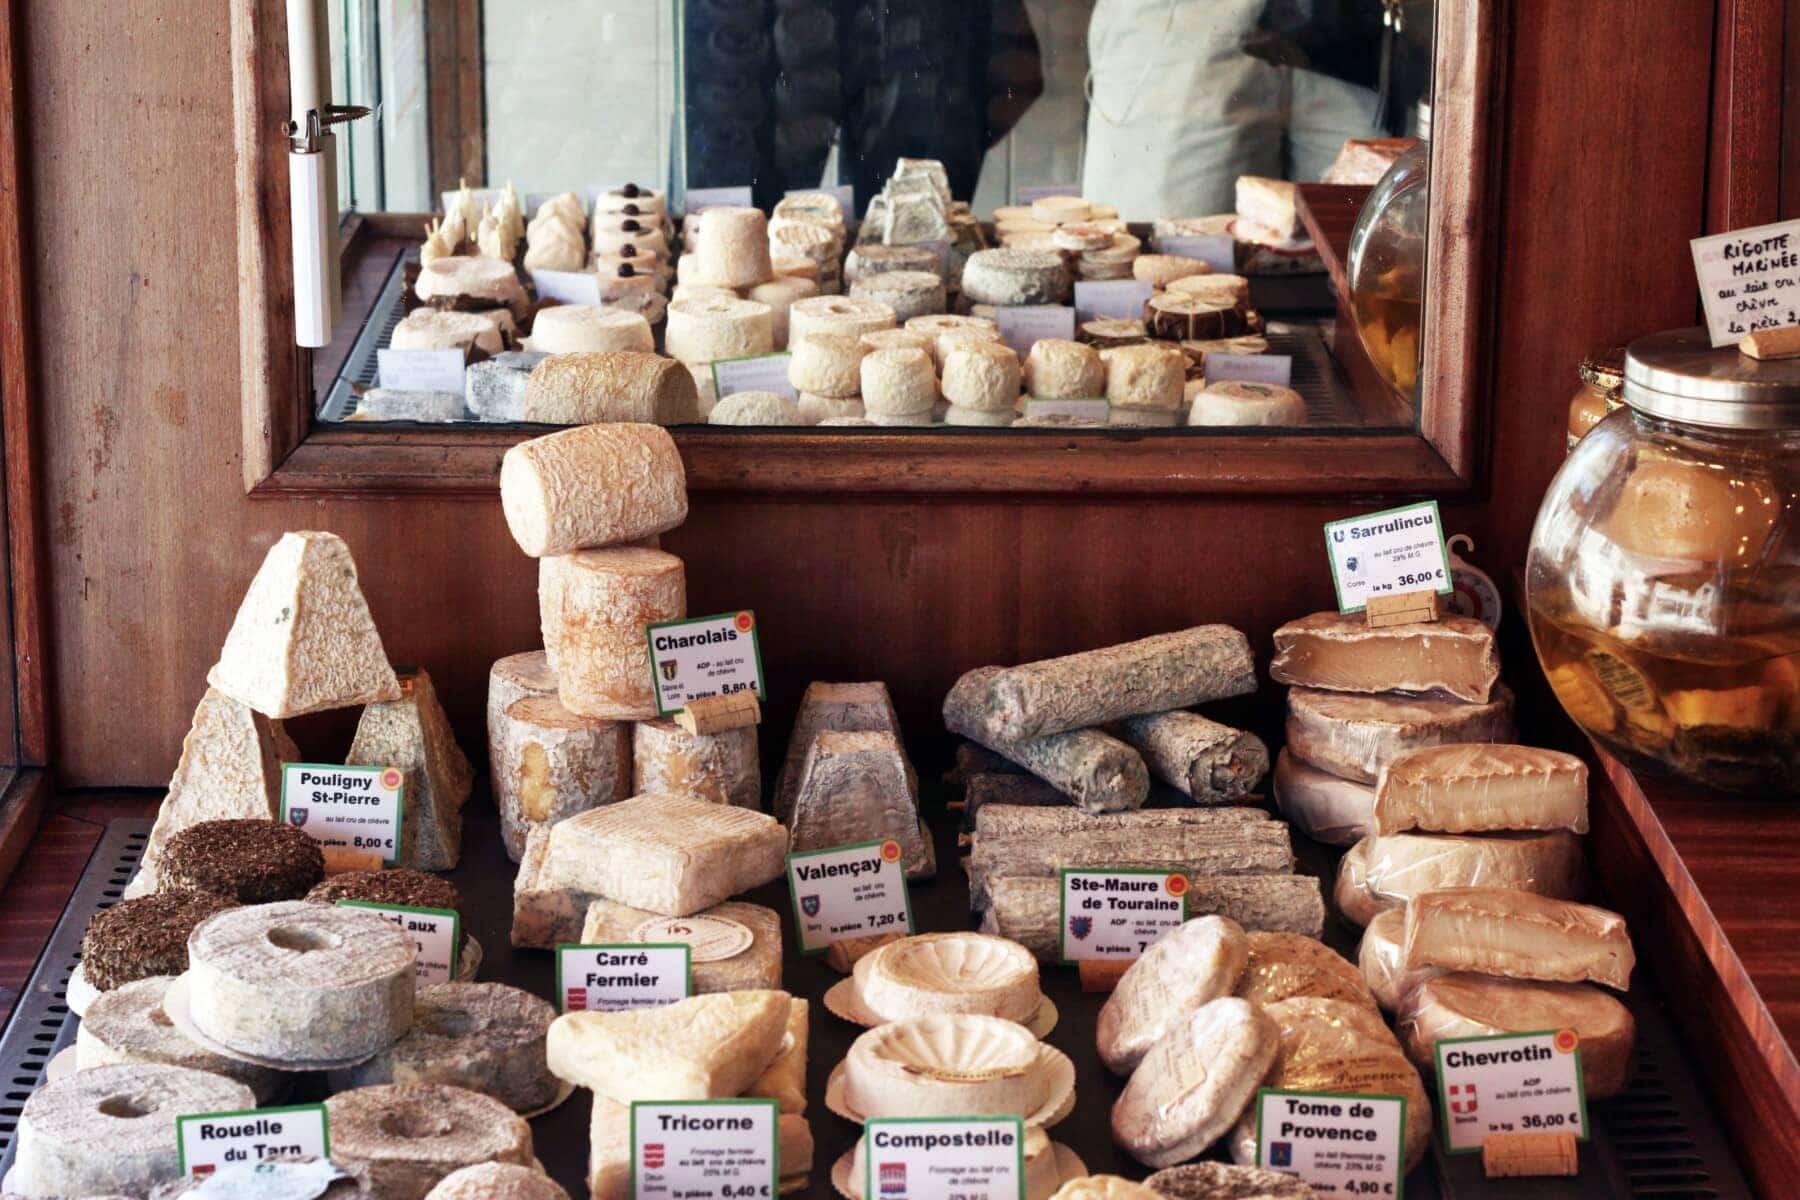 European cheeses